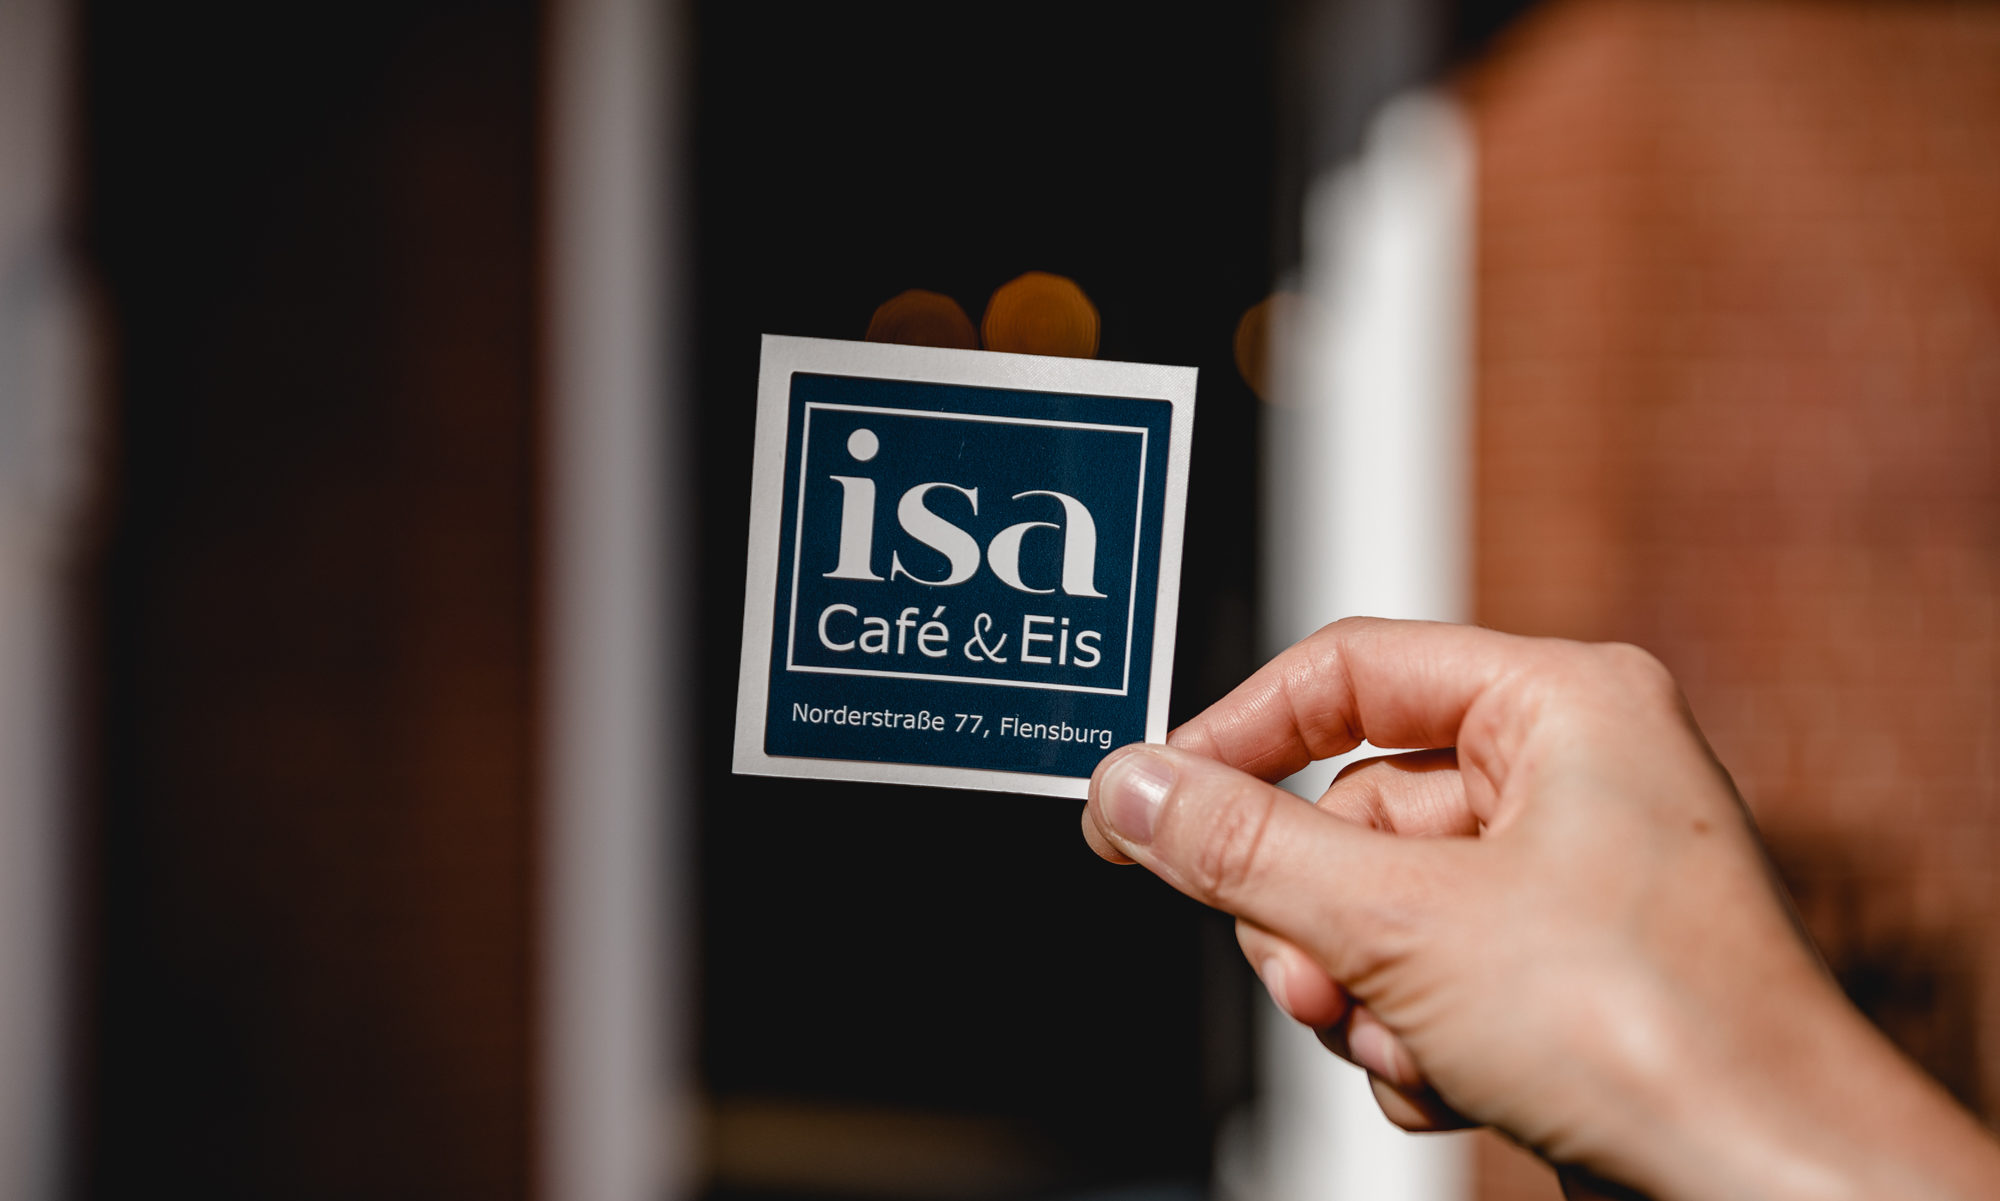 Isa - Cafe & Eis